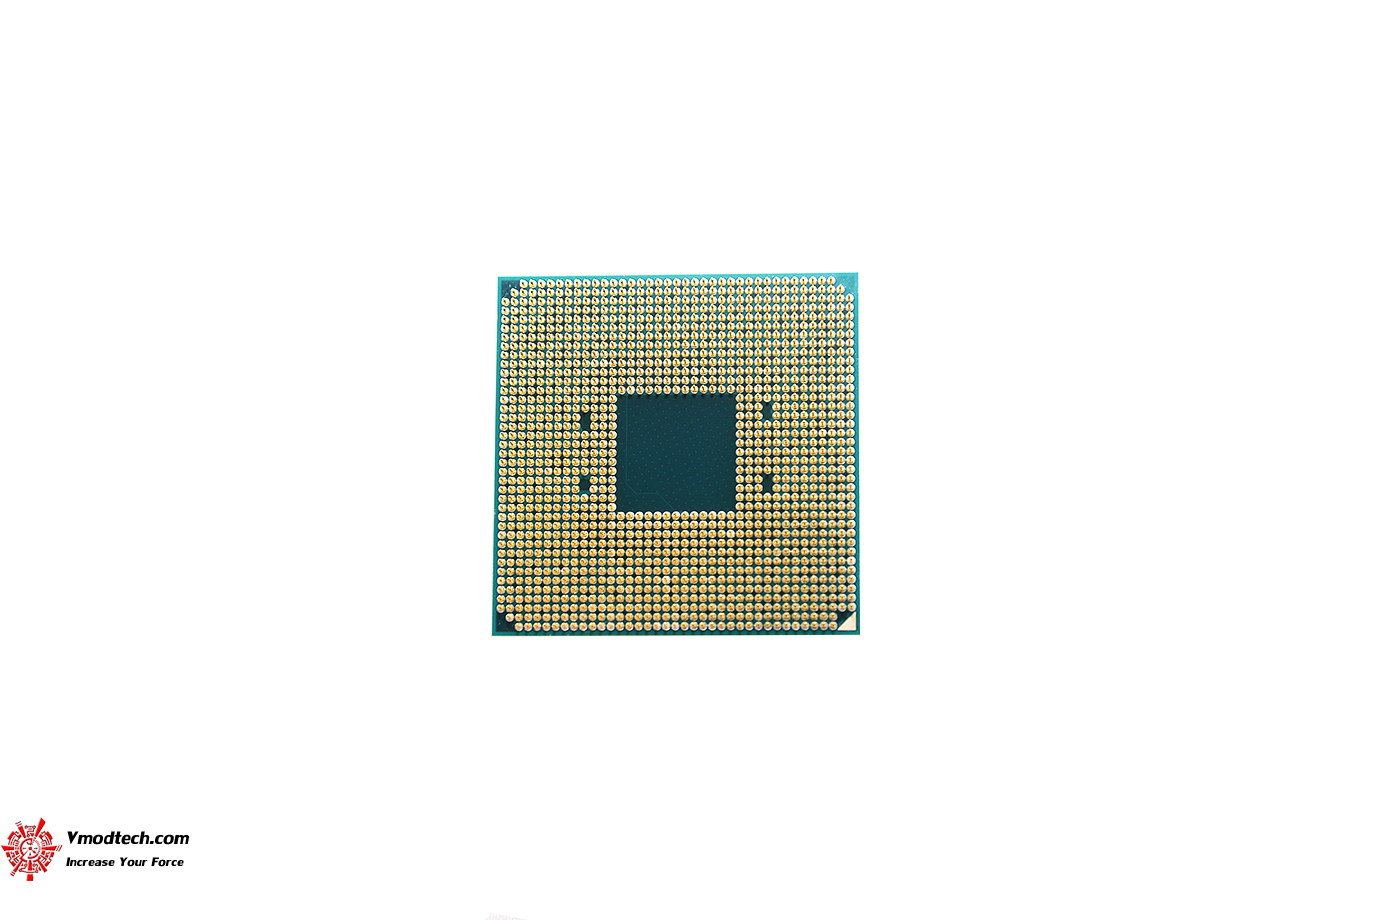 dsc 2424 AMD RYZEN 5 2600 PROCESSOR REVIEW